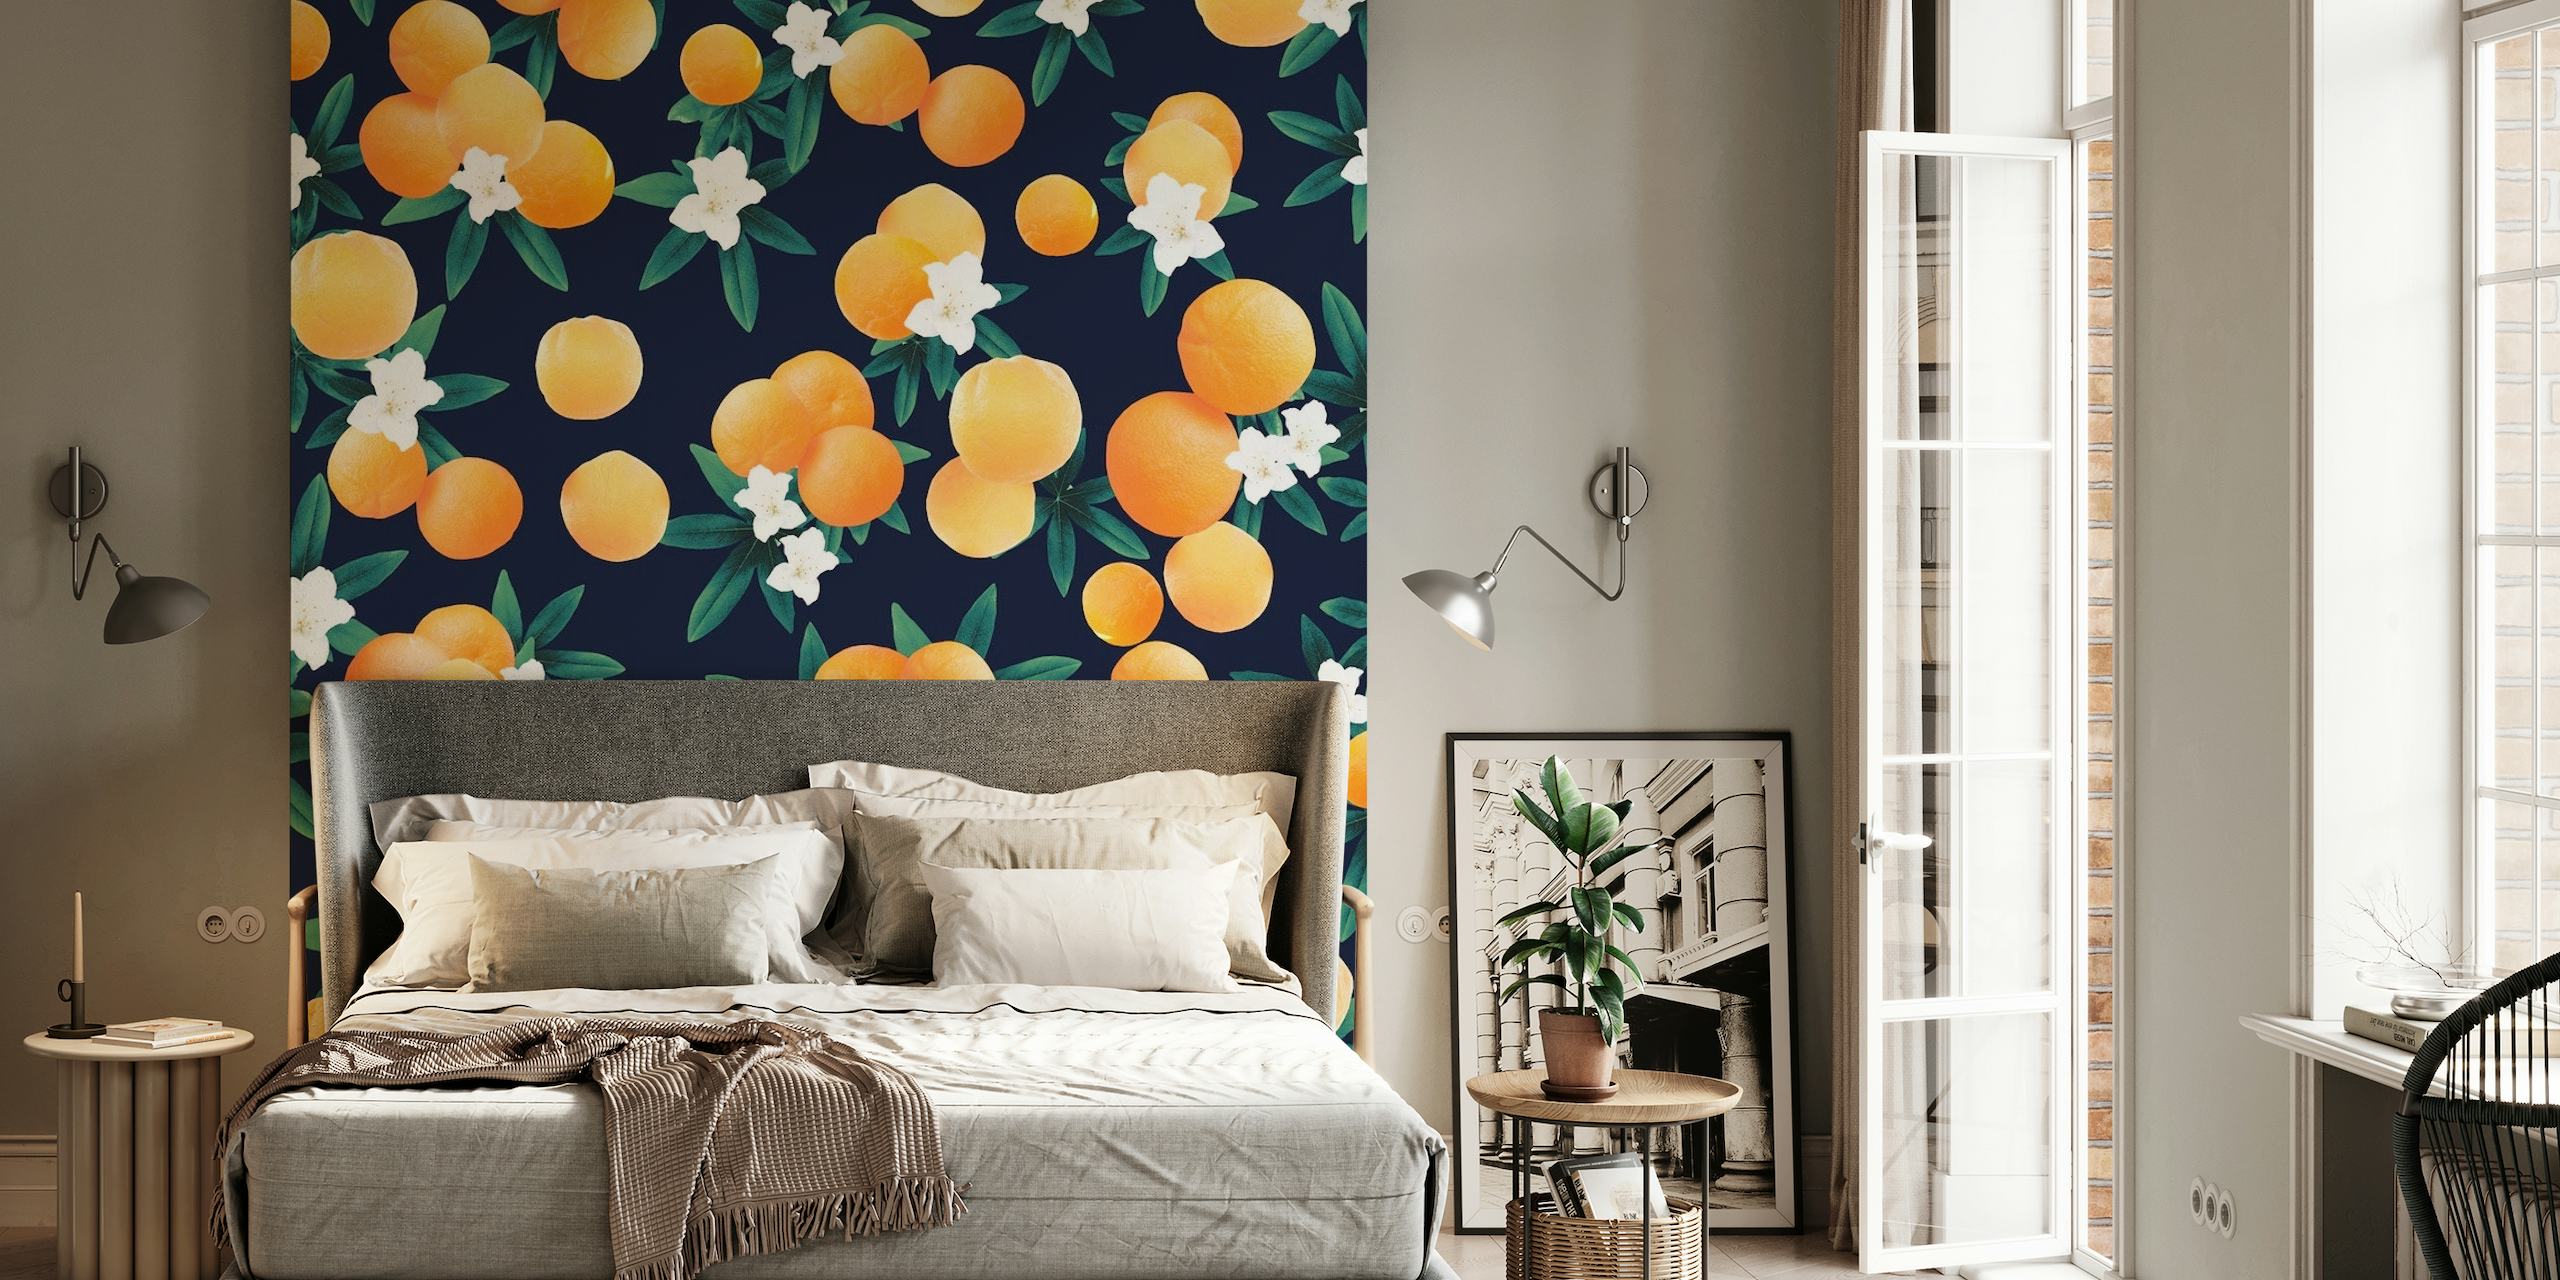 Fotobehang met feloranje citrusvruchten en witte bloemen tegen een donkerblauwe achtergrond.